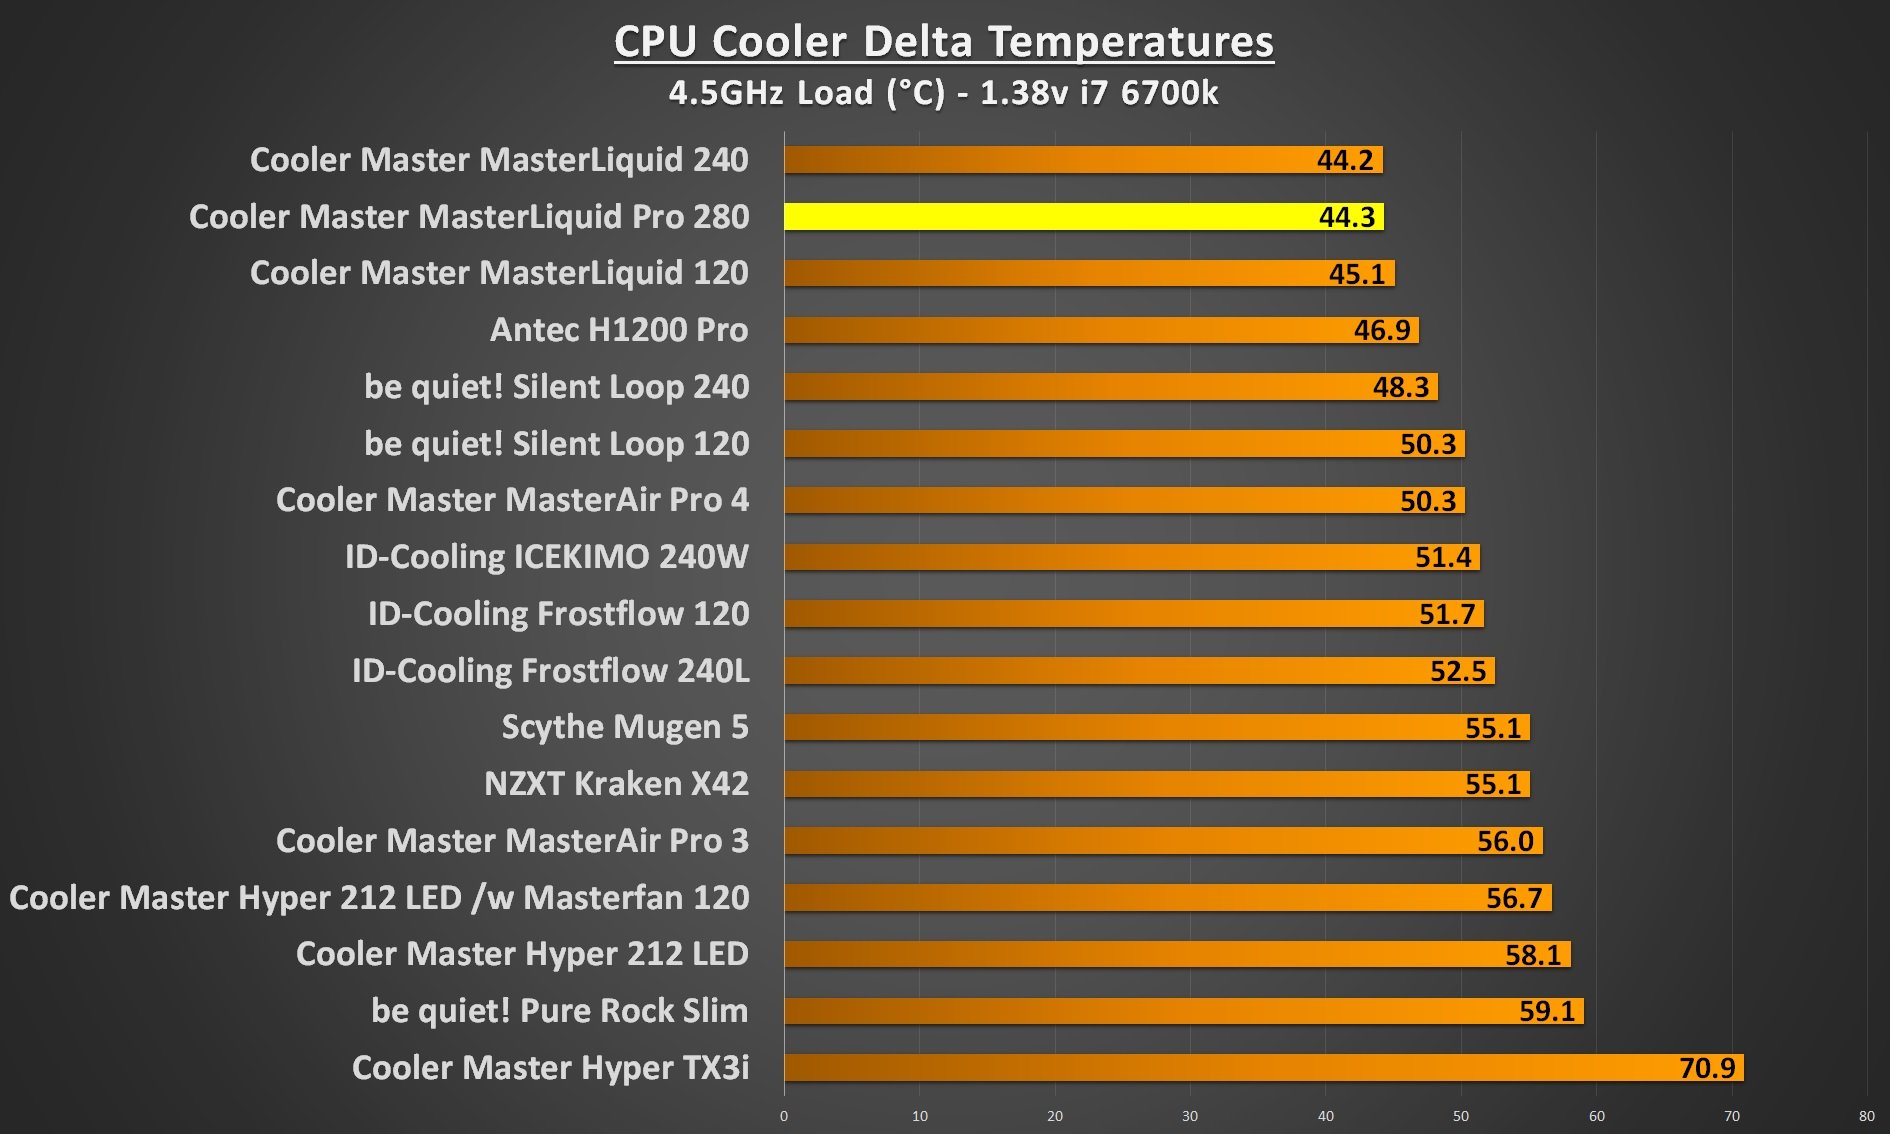 cooler master masterliquid pro 280 4.5Ghz load